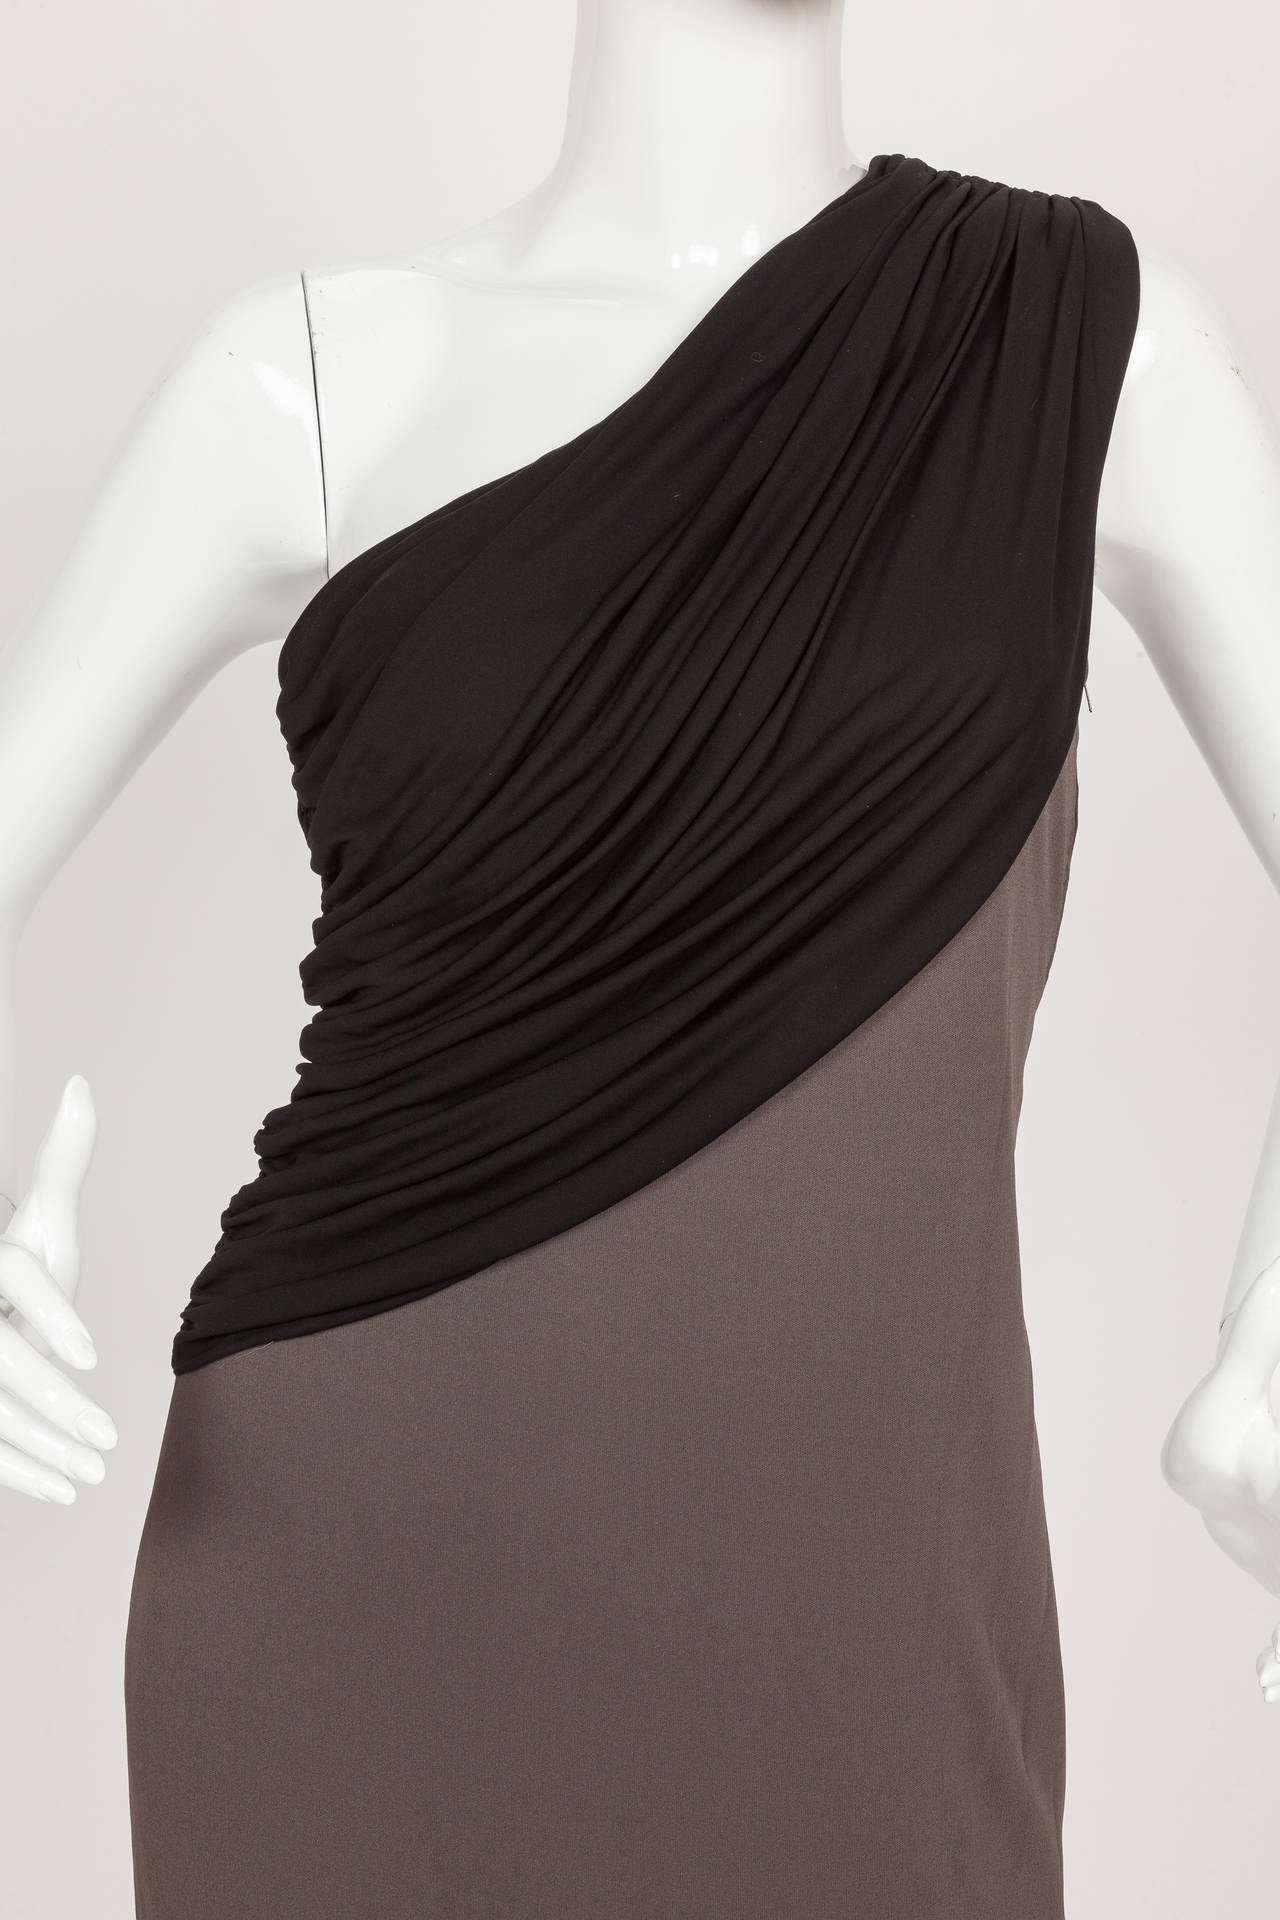 Madame Gres knielanges, schulterfreies Kleid aus schwarzem und schiefergrauem Seidenjersey aus den 1970er Jahren. Das Mieder ist aus einer Lage schwarzem, plissiertem und drapiertem Seidenjersey gefertigt, und das Kleid ist innen mit Seide